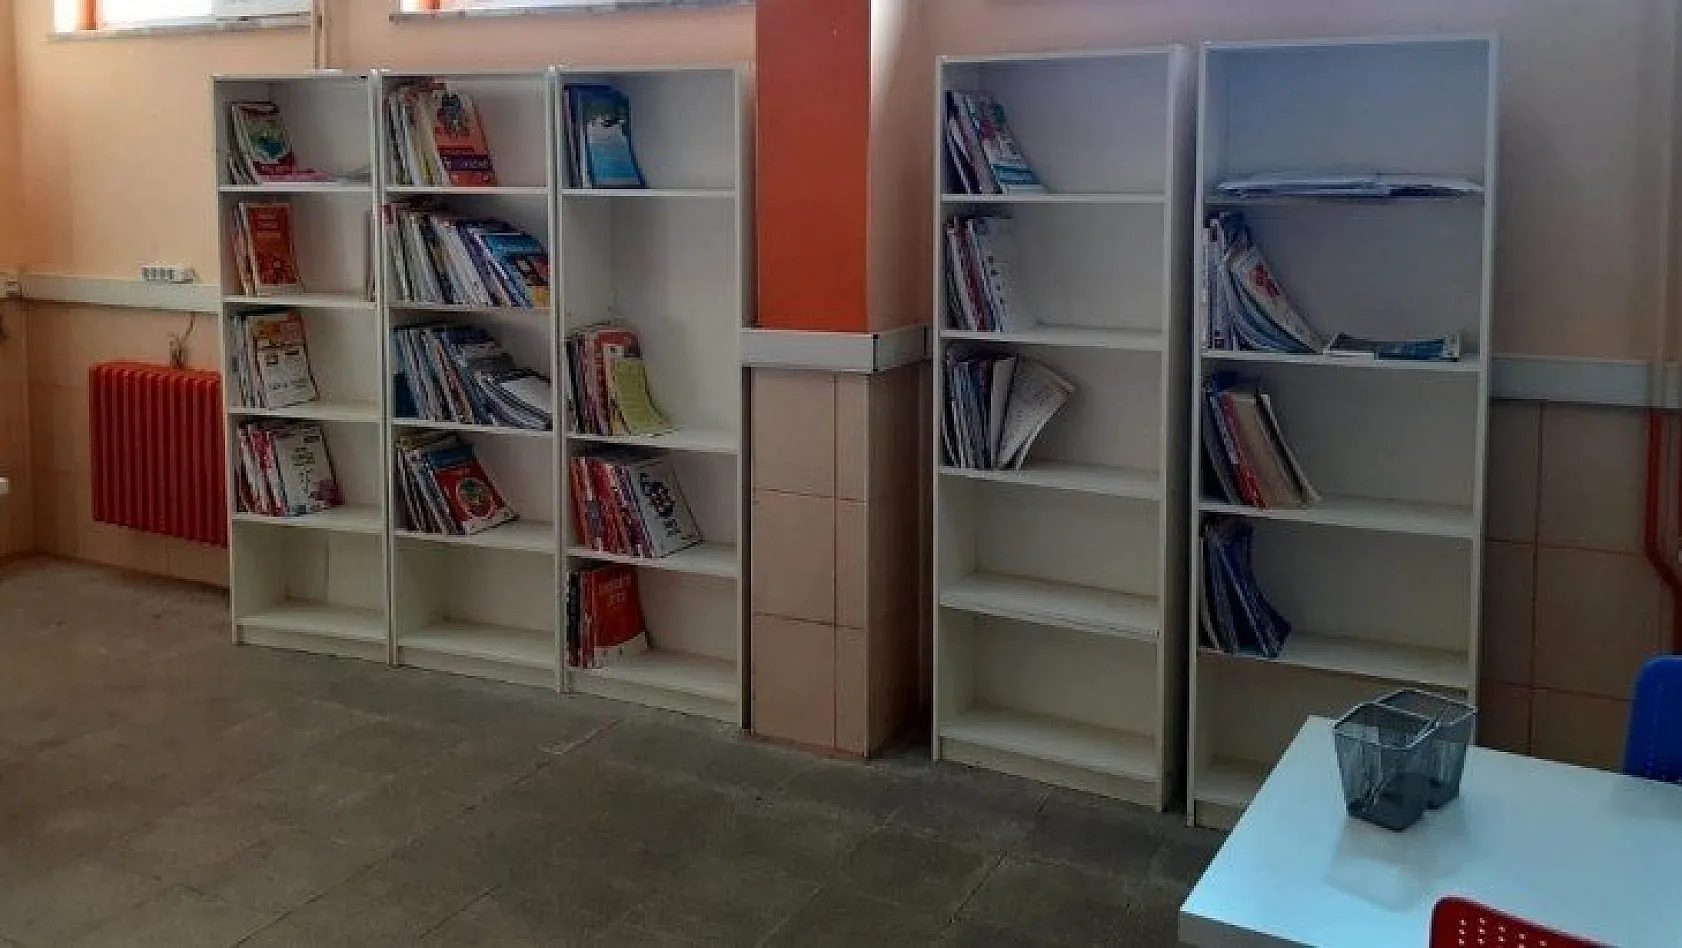 Şehit polis adına kütüphane